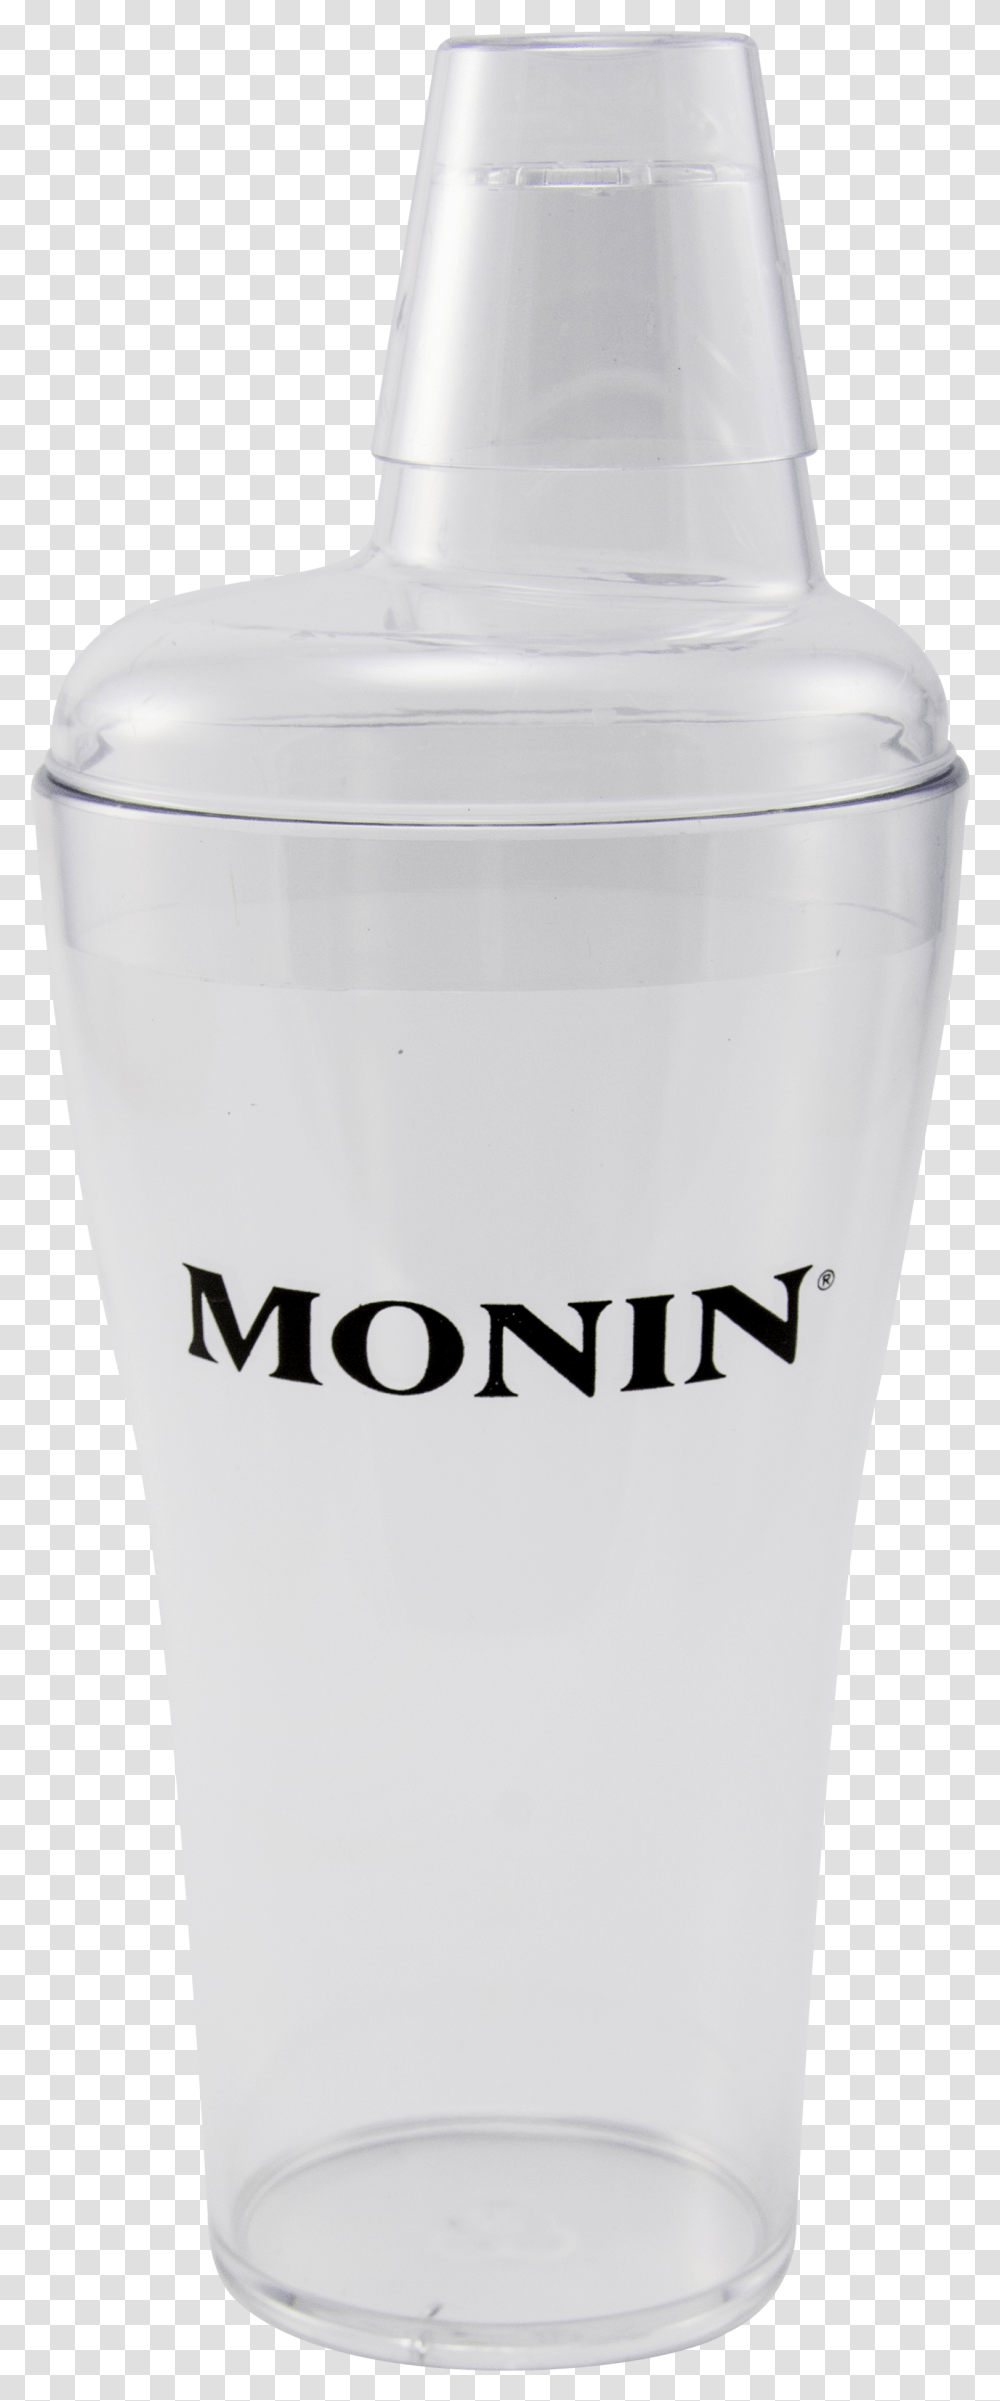 Clear Glass Monin, Milk, Beverage, Drink, Shaker Transparent Png